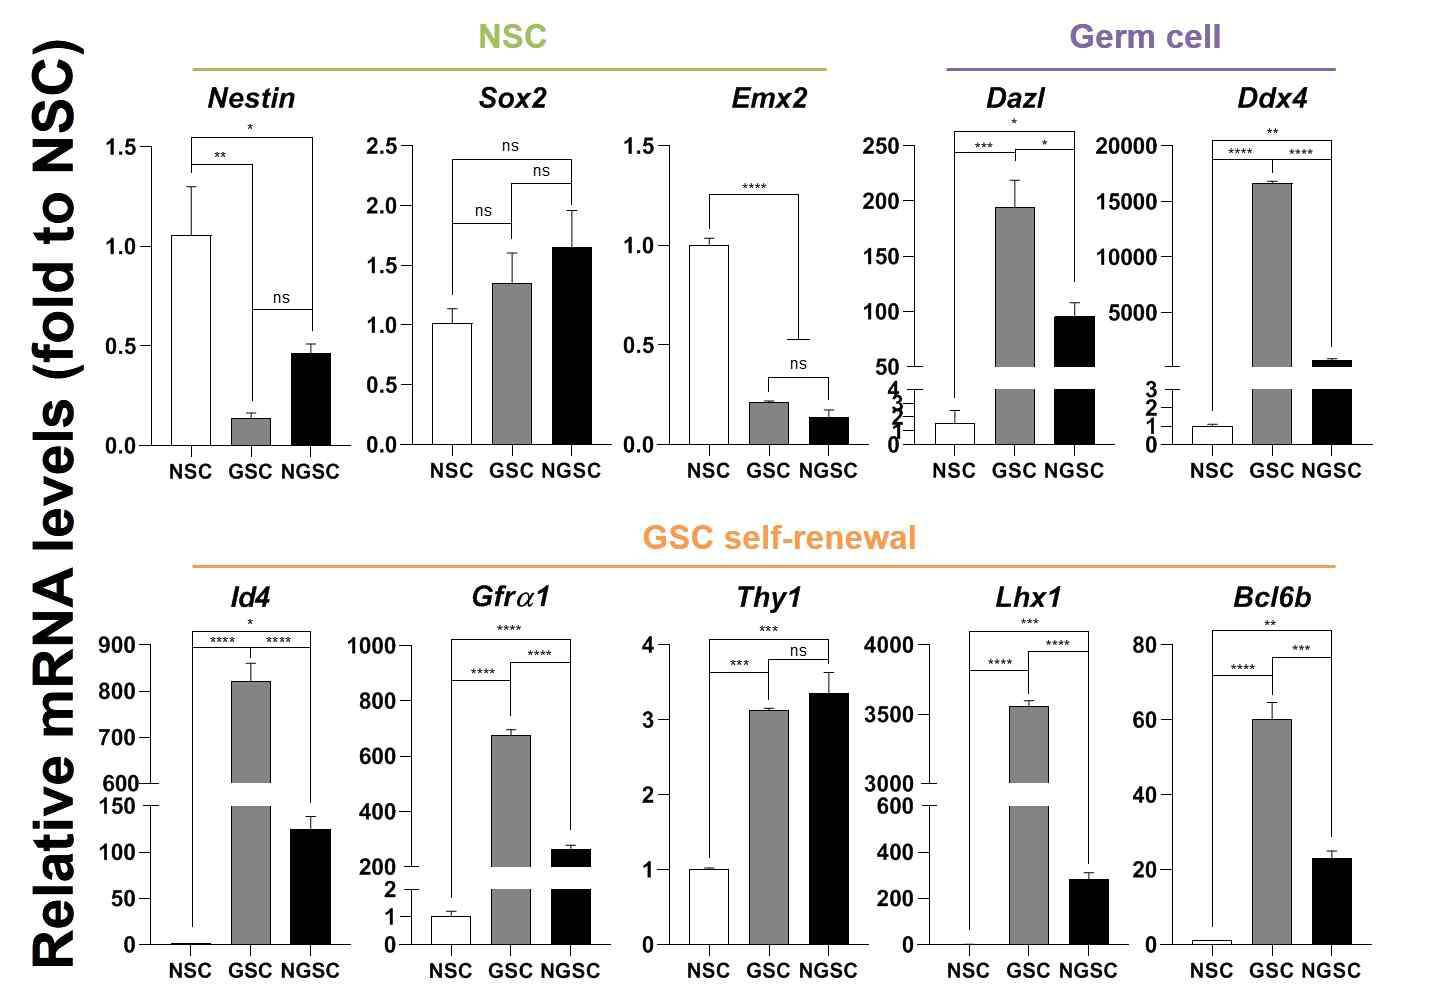 신경줄기세표, 생식선줄기세포, 신경줄기세포 유도생식선줄기세포에서 유전자 발현양상. 신경줄기세포 마커(Nestin, Sox2, Emx2), 생식세포 마커 (Dazl, Ddx4), 미분화 정원세포 마커 (Id4, Gfra1, Thy1, Lhx1, Bcl6b)를 이용하였음